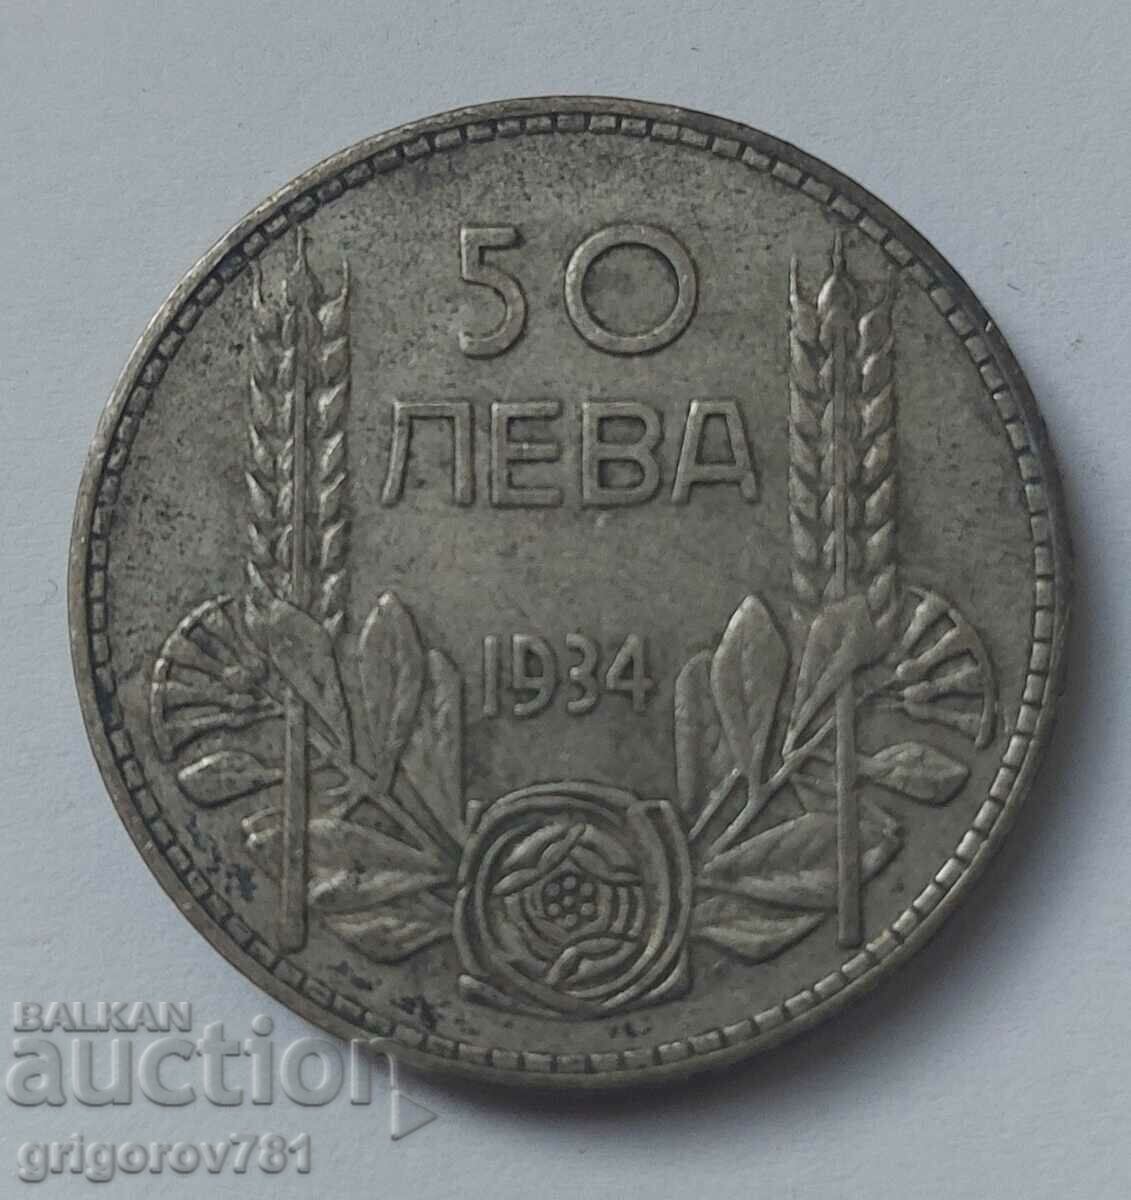 50 leva silver Bulgaria 1934 - silver coin #21